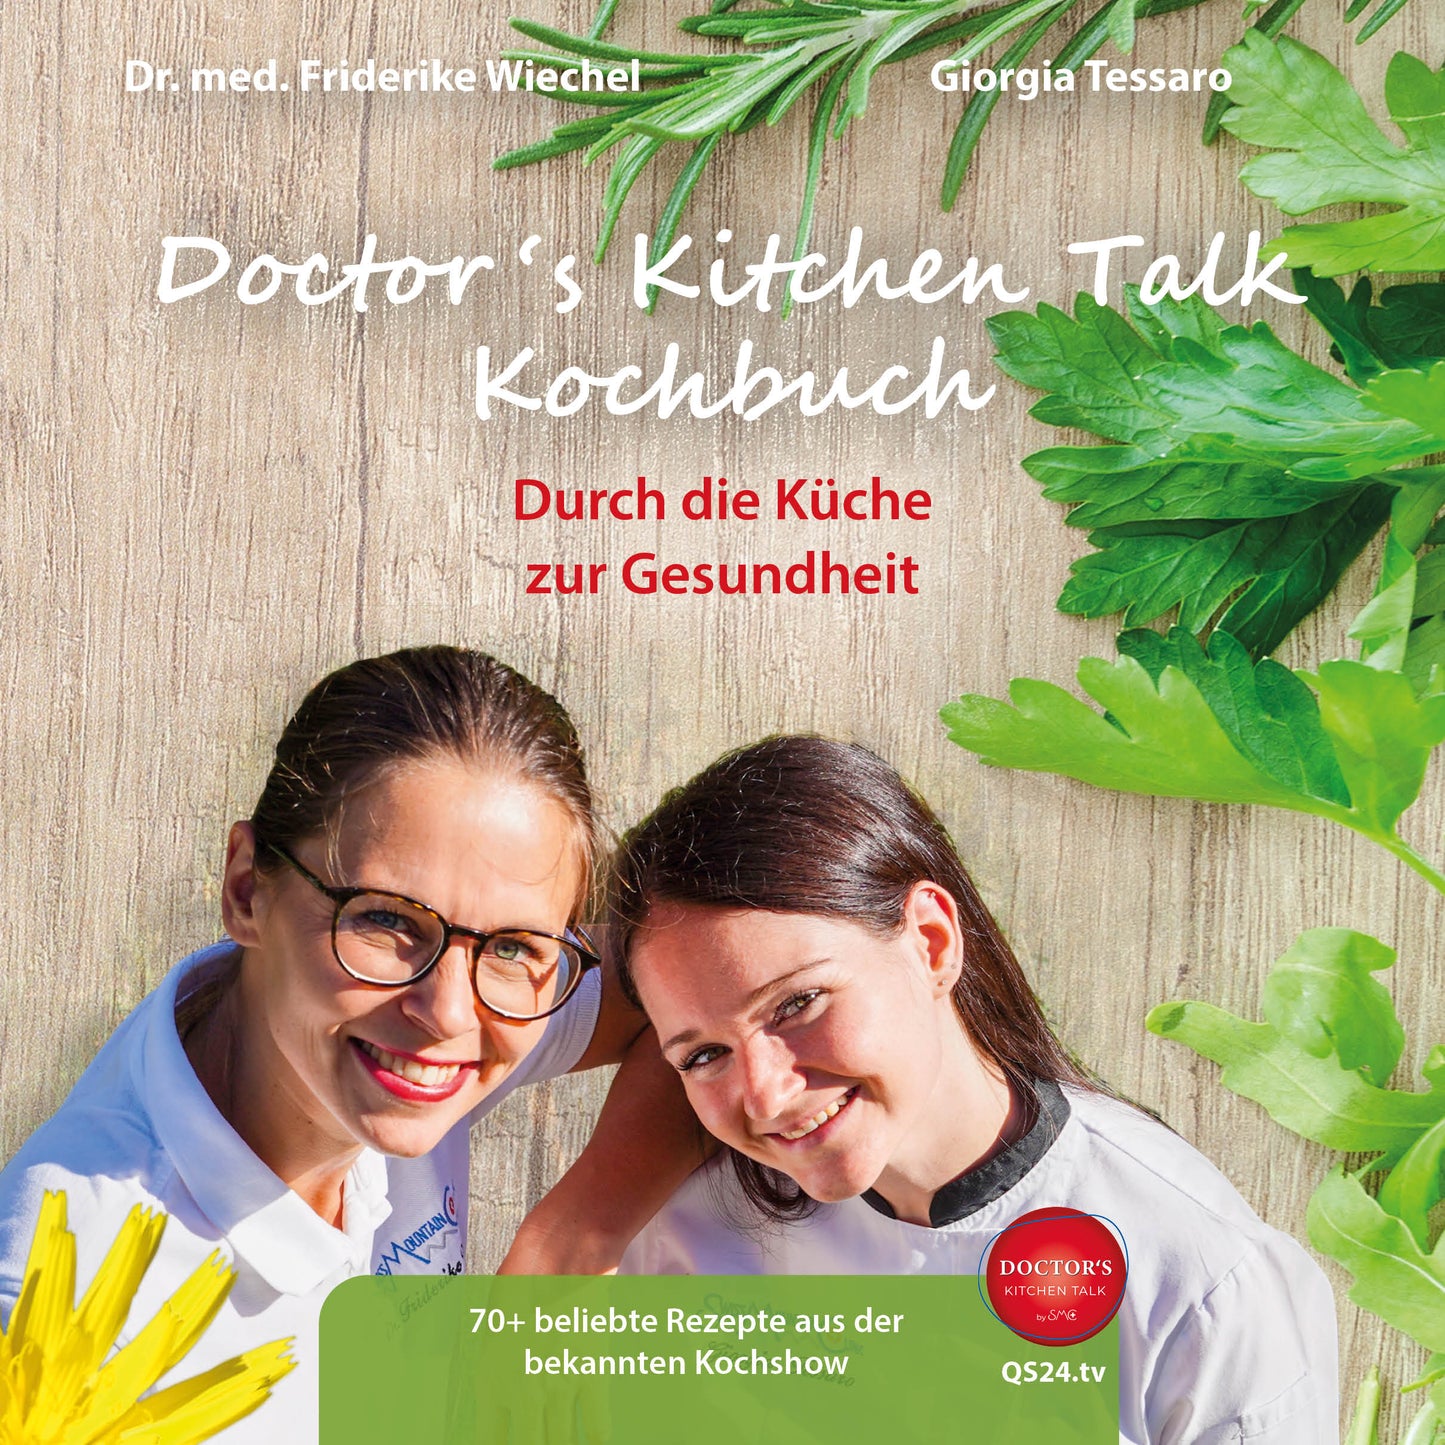 Doctor ‘s Kitchen Talk Kochbuch (Deutsch)